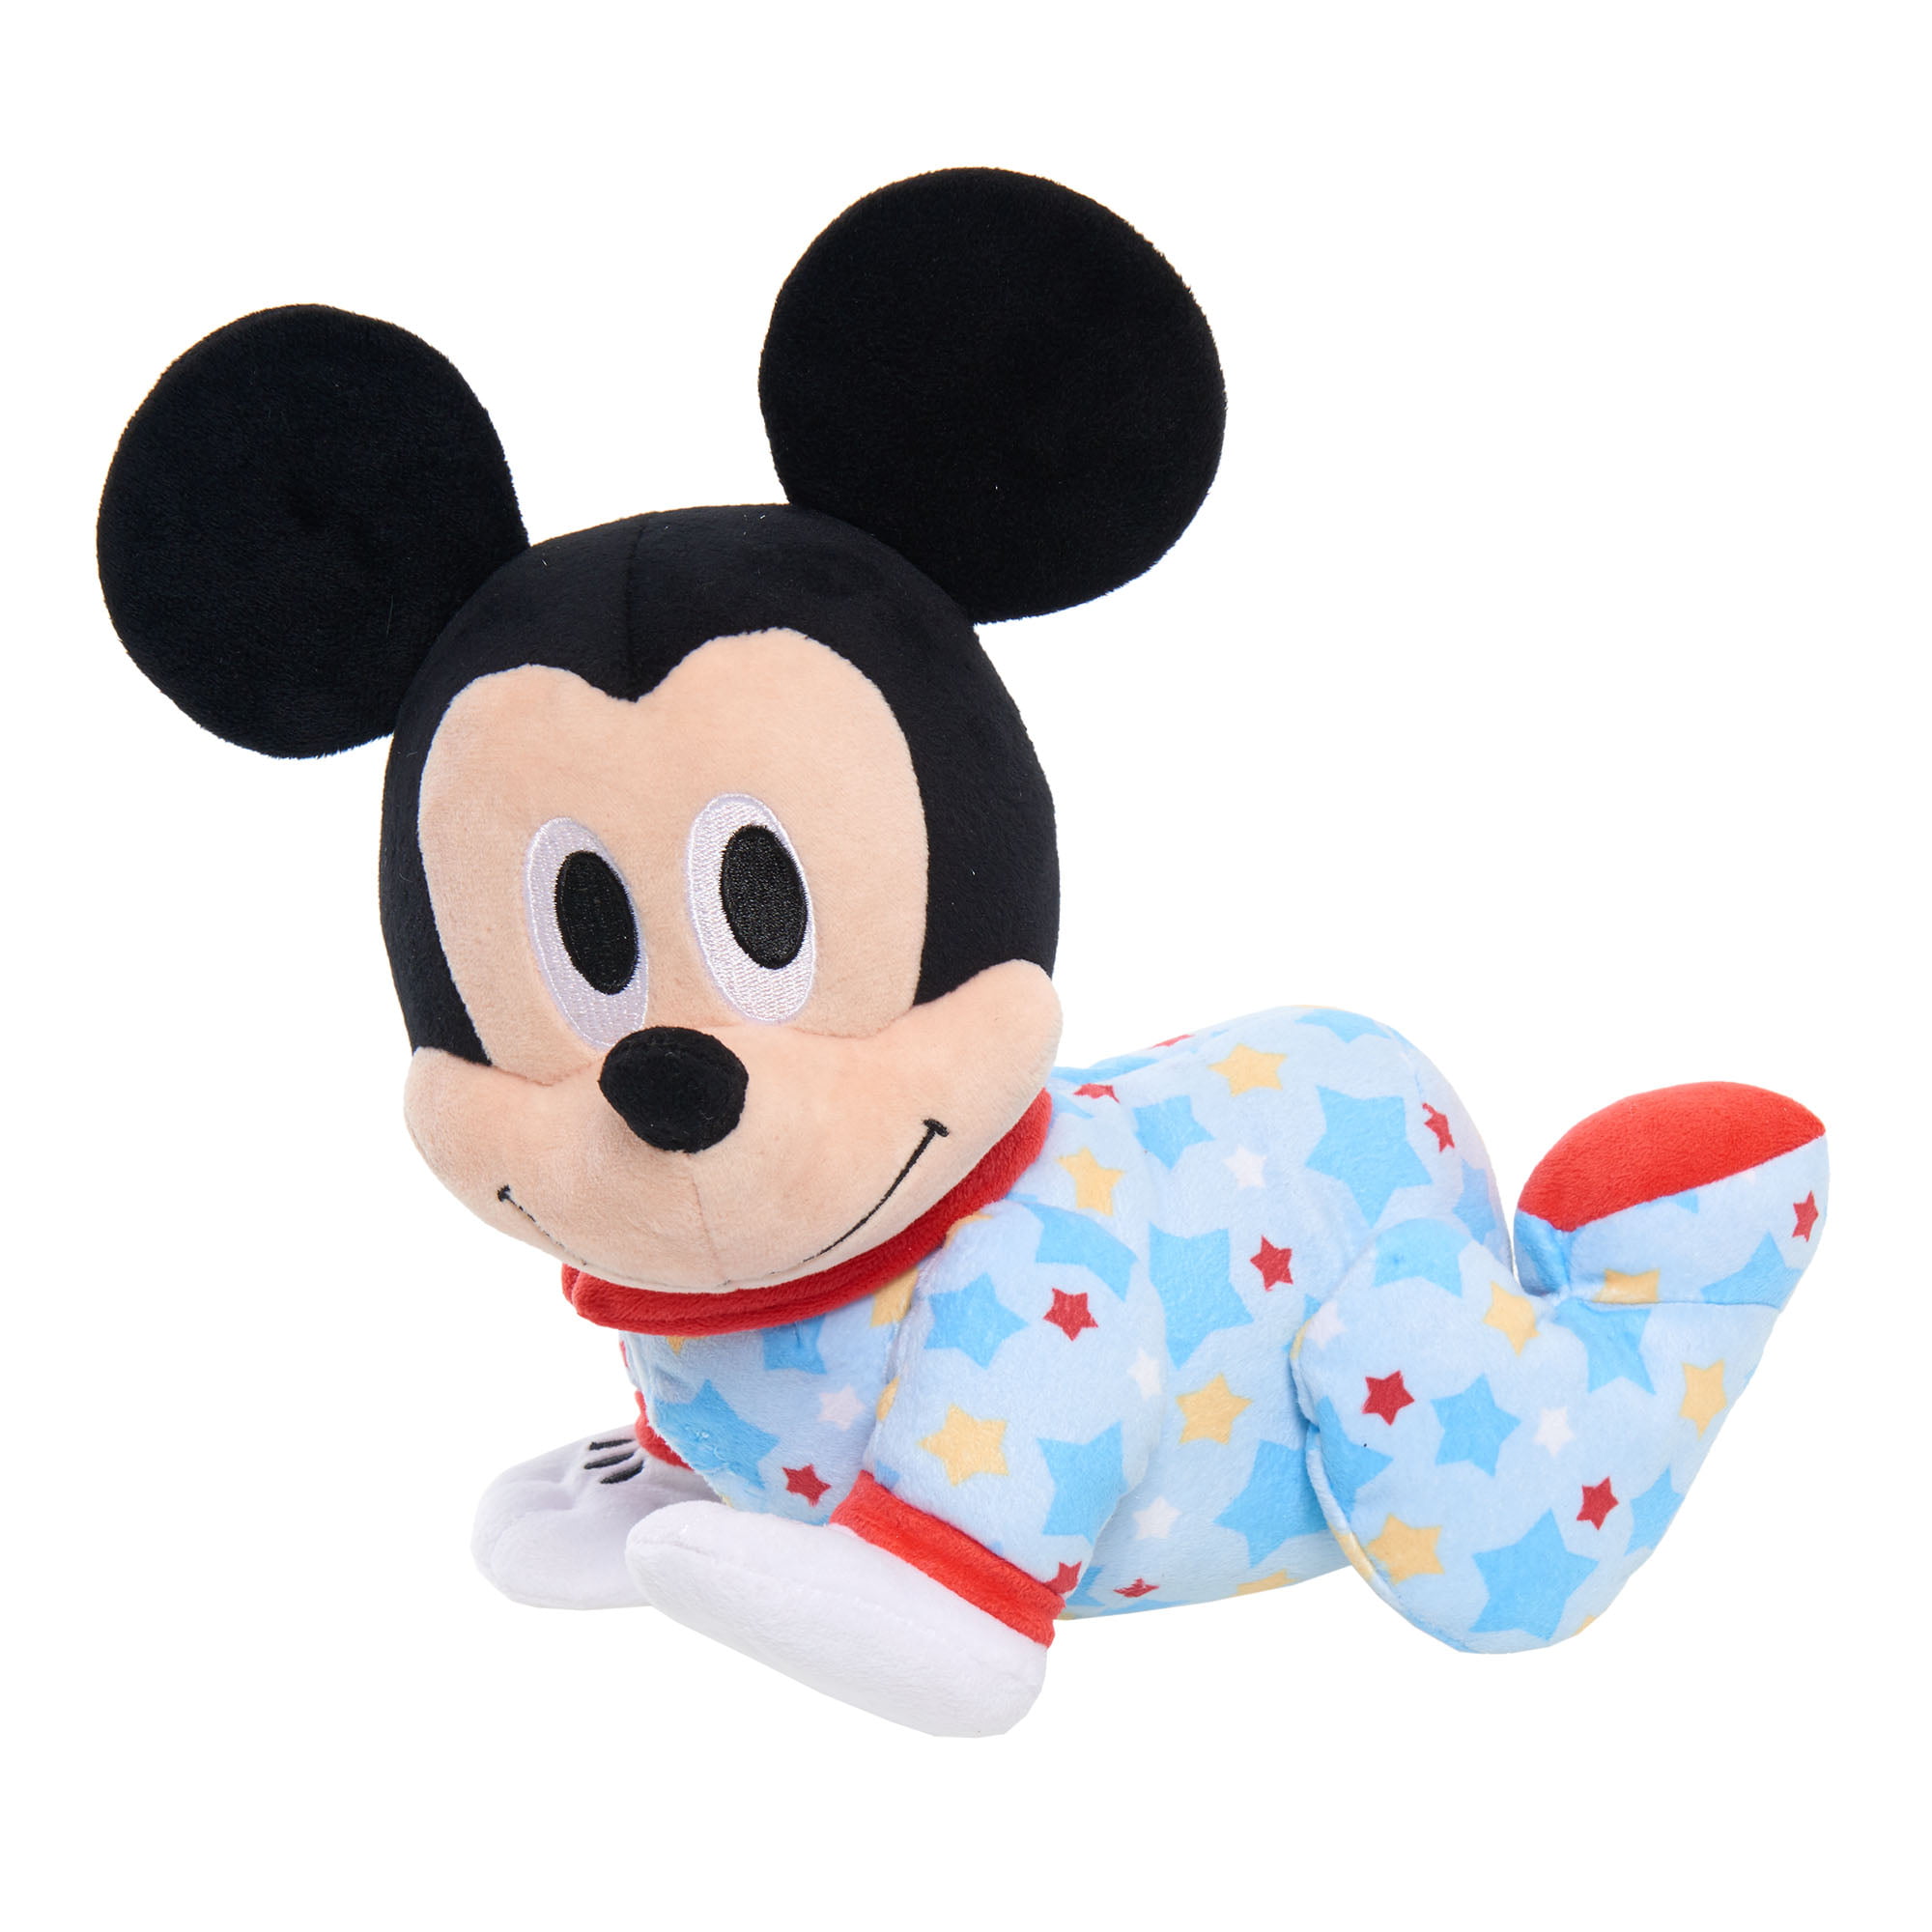 Disney Baby Musical Crawling Pals Plush 